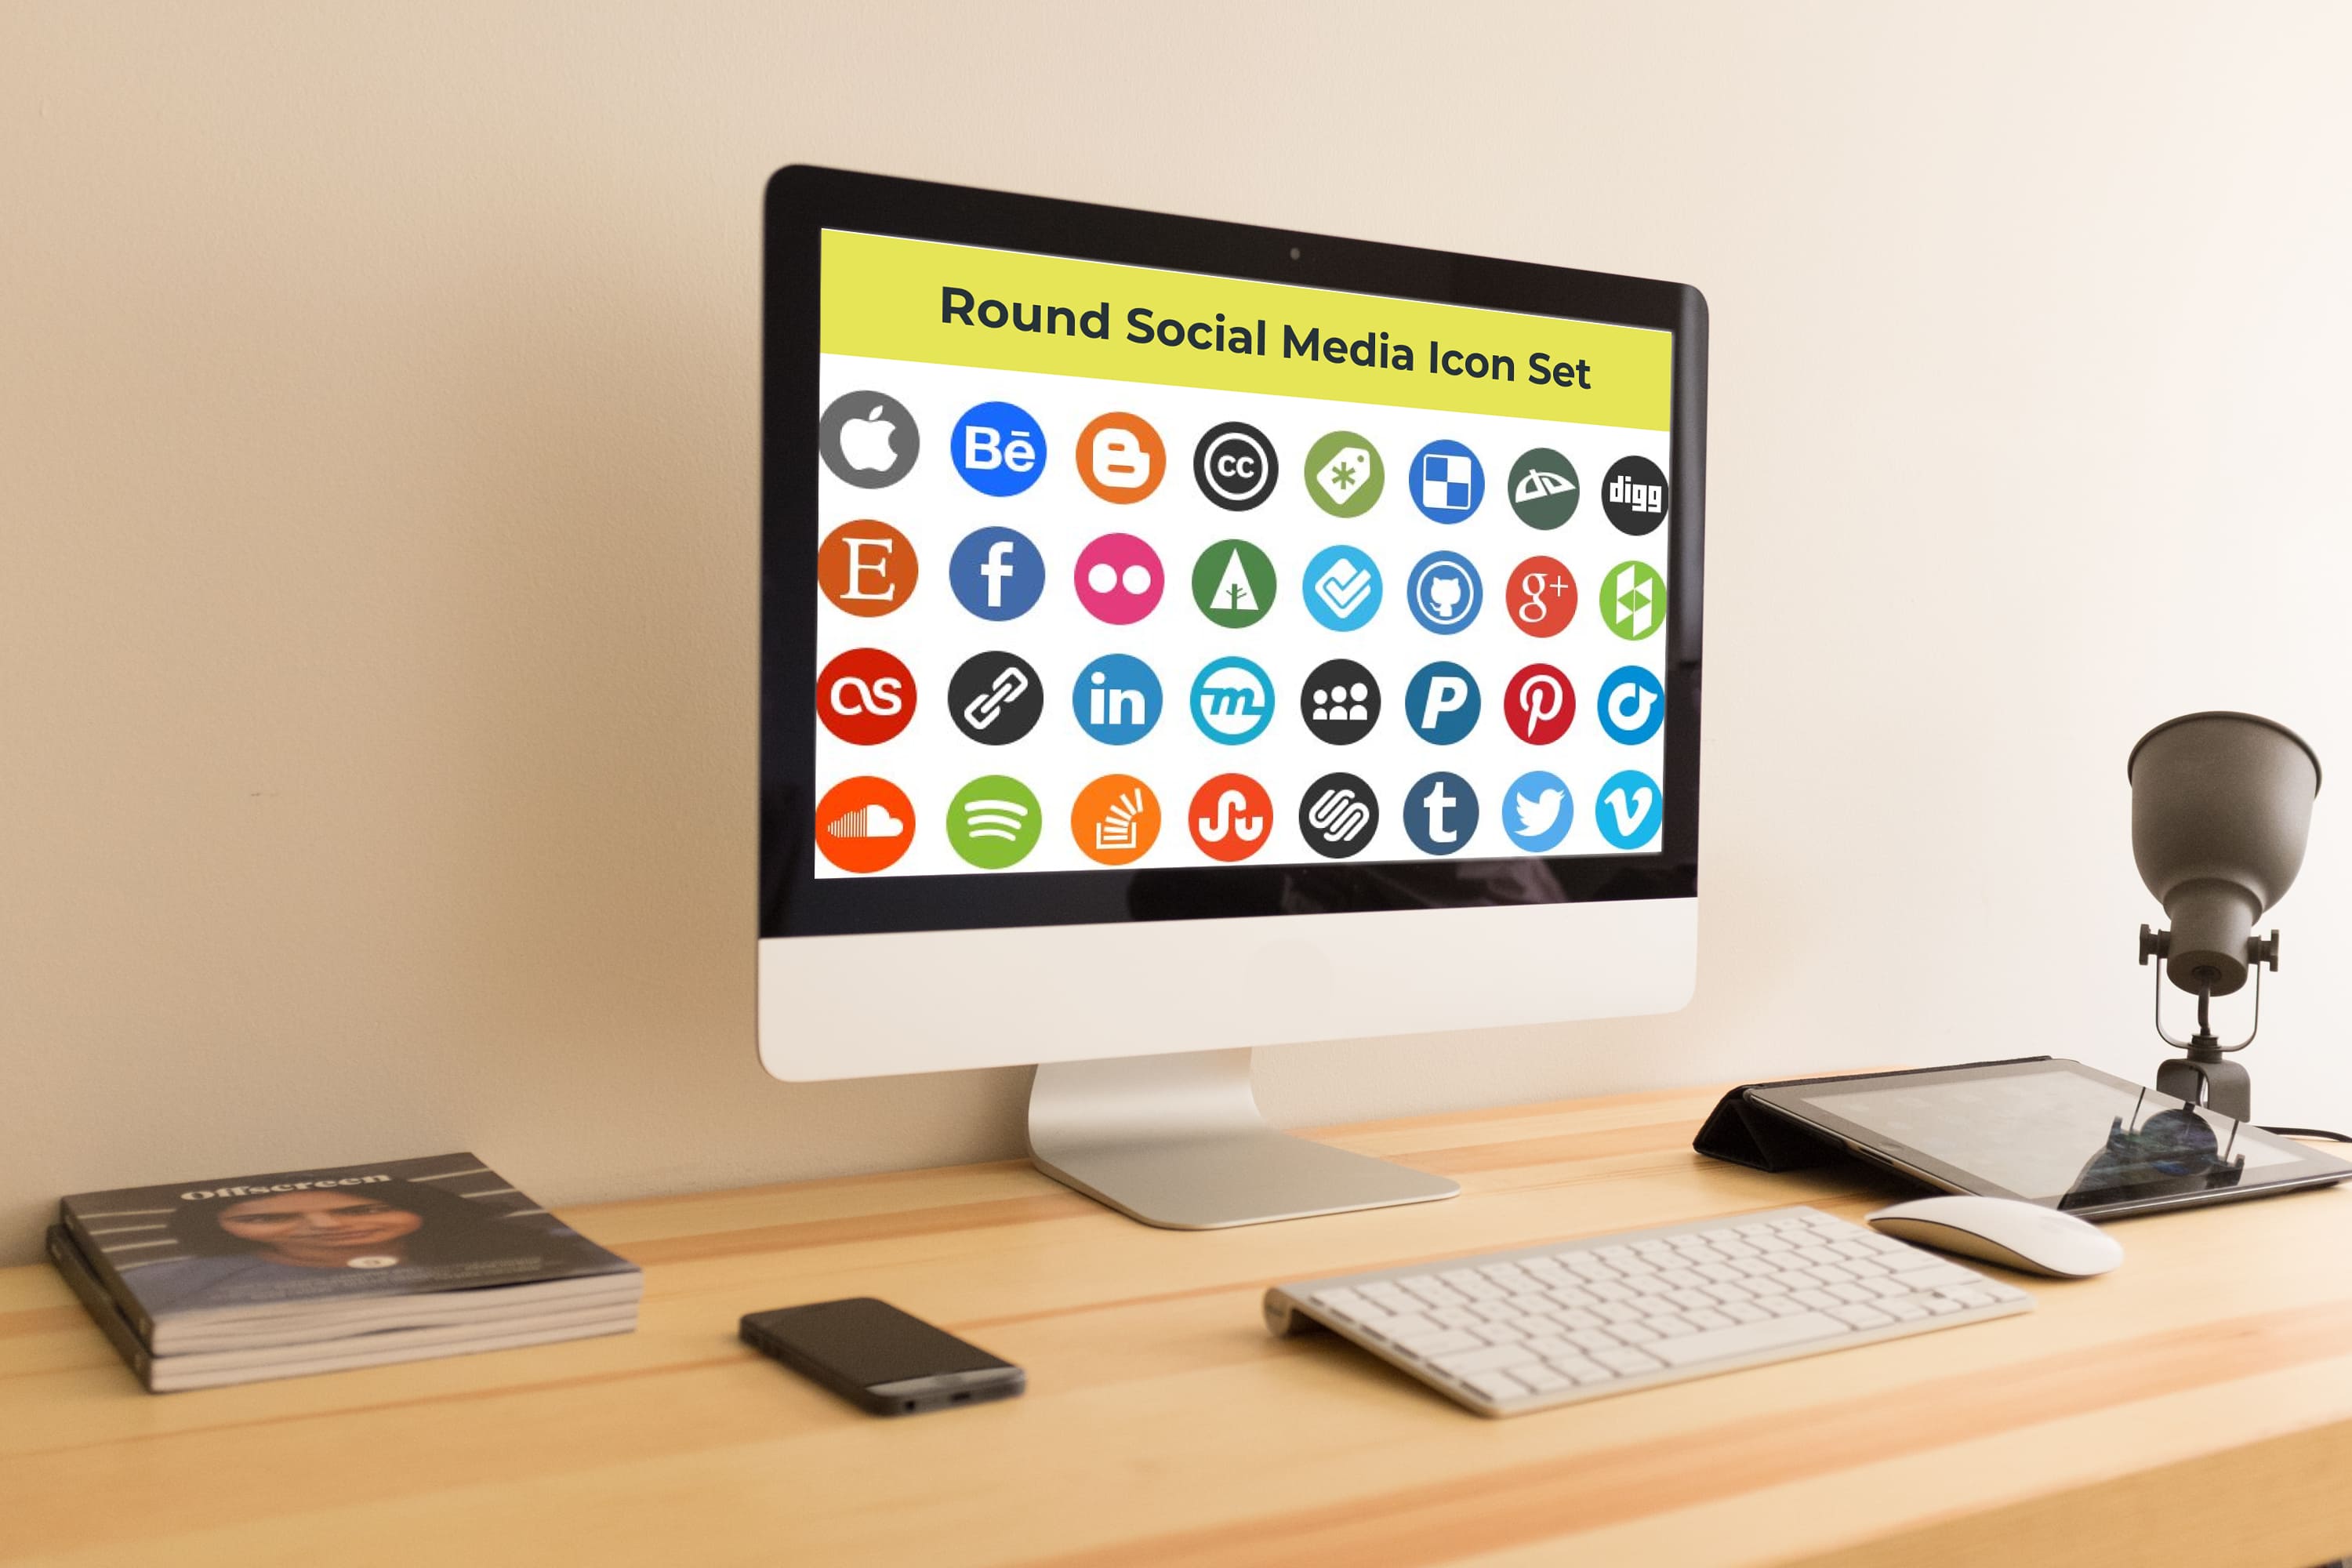 Desktop option of the Round Social Media Icon Set.